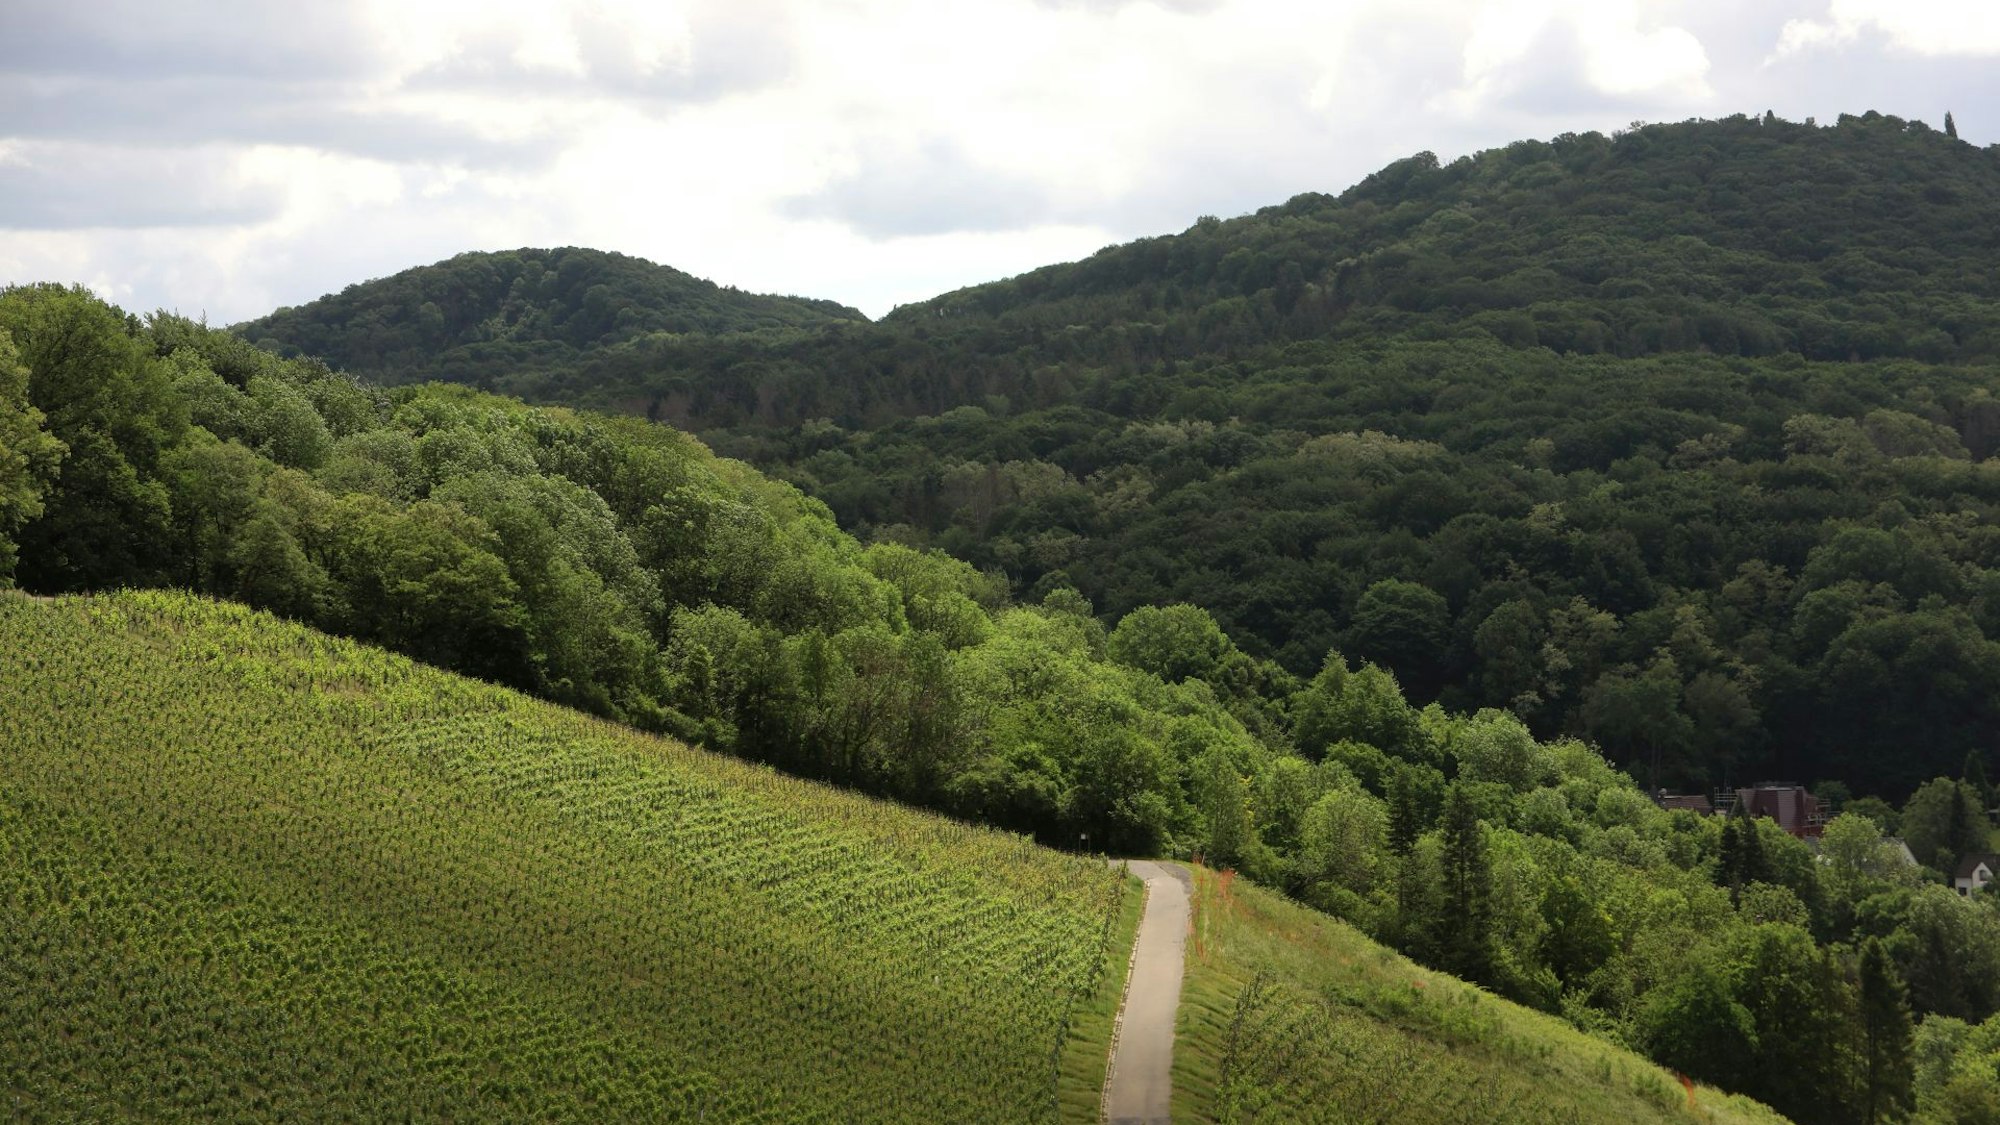 Auf dem Bild ist der Weinwanderweg zu sehen, der im Siebengebirge zwischen Weinstöcken hindurchführt.